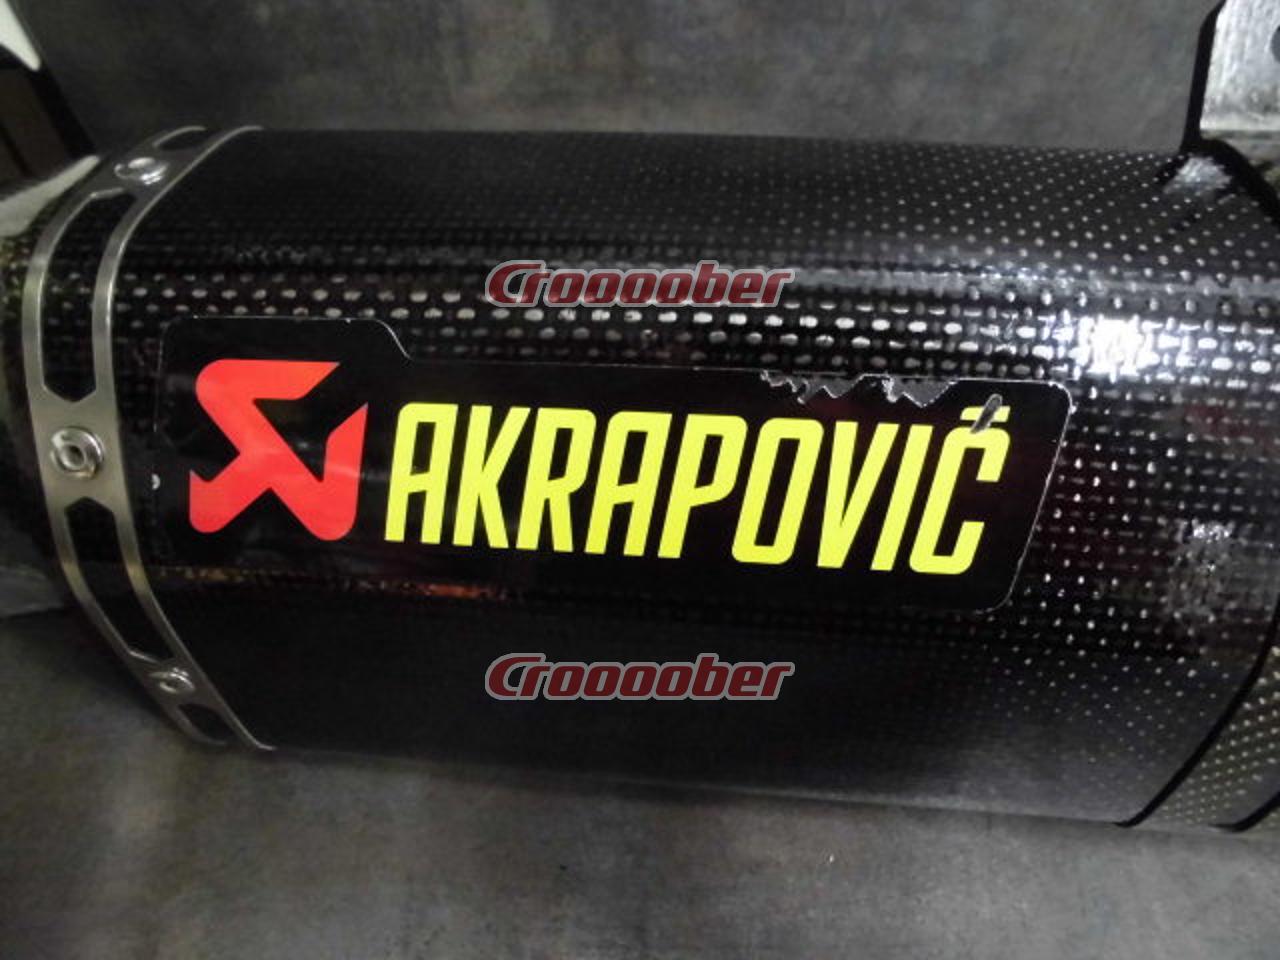 AKRAPOVIC(アクラポヴィッチ) GSXR1000(K7) スリップオンサイレンサー 